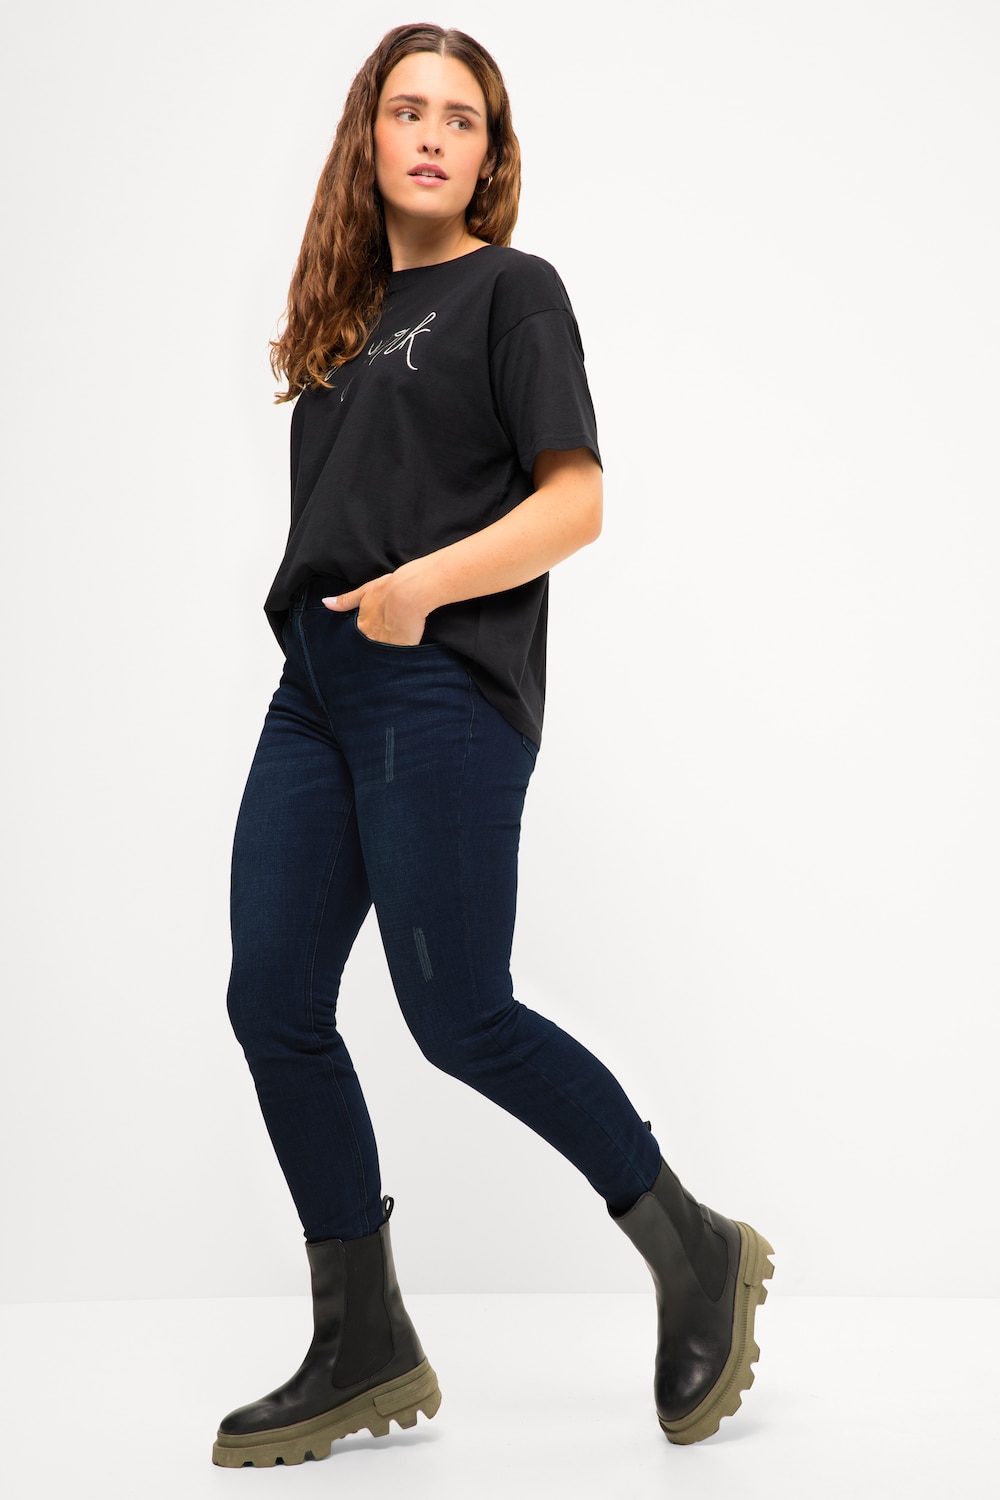 Grote Maten Skinny jeans, Dames, blauw, Maat: 50, Viscose/Katoen/Polyester, Studio Untold